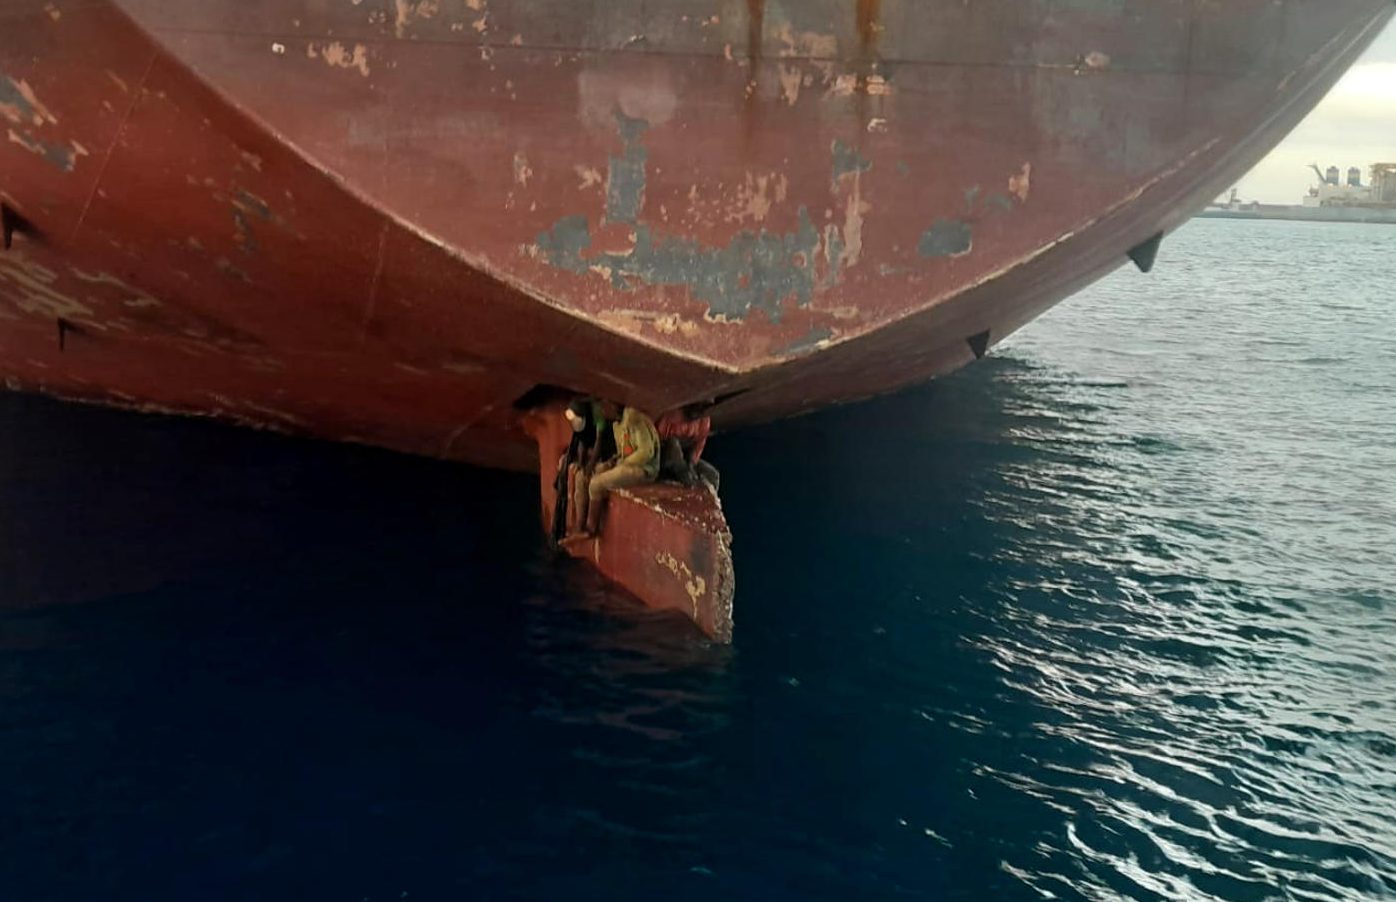 Imagen facilitada por Salvamento Marítimo de los tres varones localizados sobre el timón del petrolero Alithini II, tras la llegada del buque a Las Palmas de Gran Canaria desde Nigeria. EFE/Salvamento Marítimo